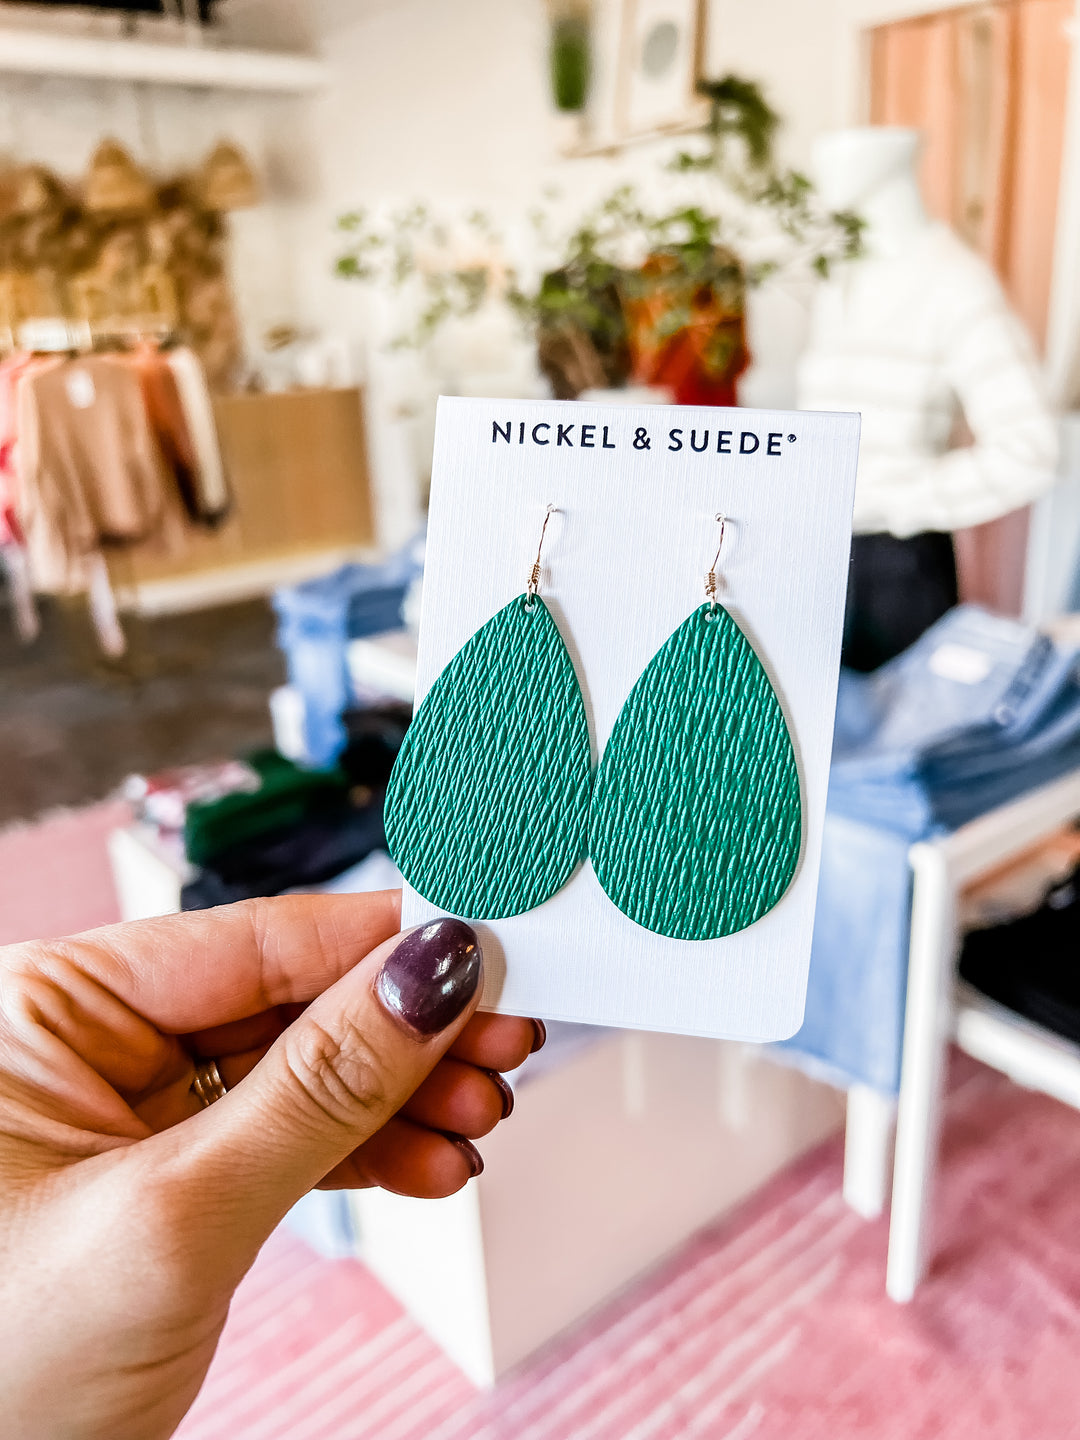 The Spruce Teardrops Earrings [Nickel & Suede]